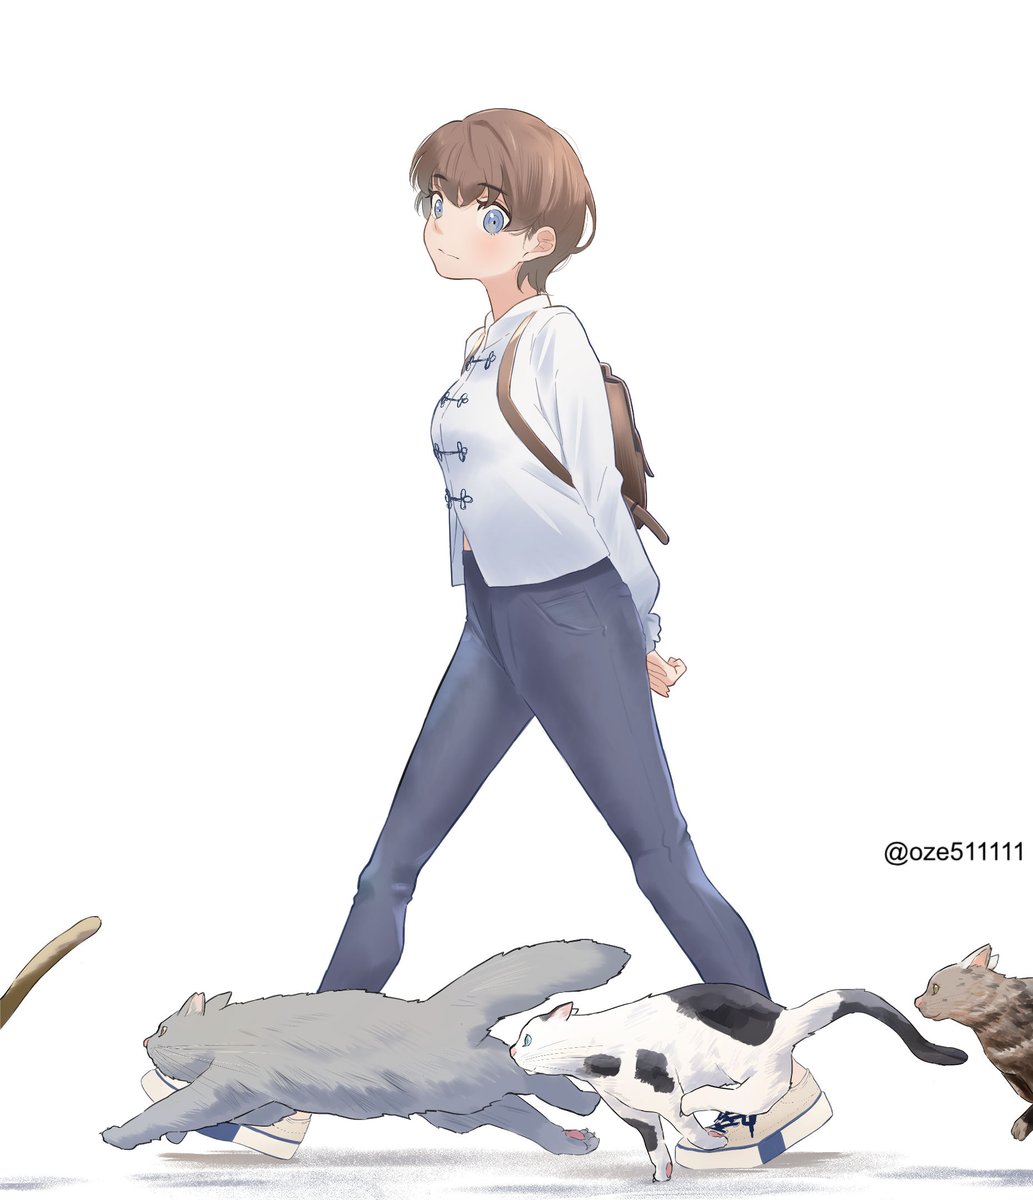 「歩く女性と走る猫 」|尾瀬のイラスト